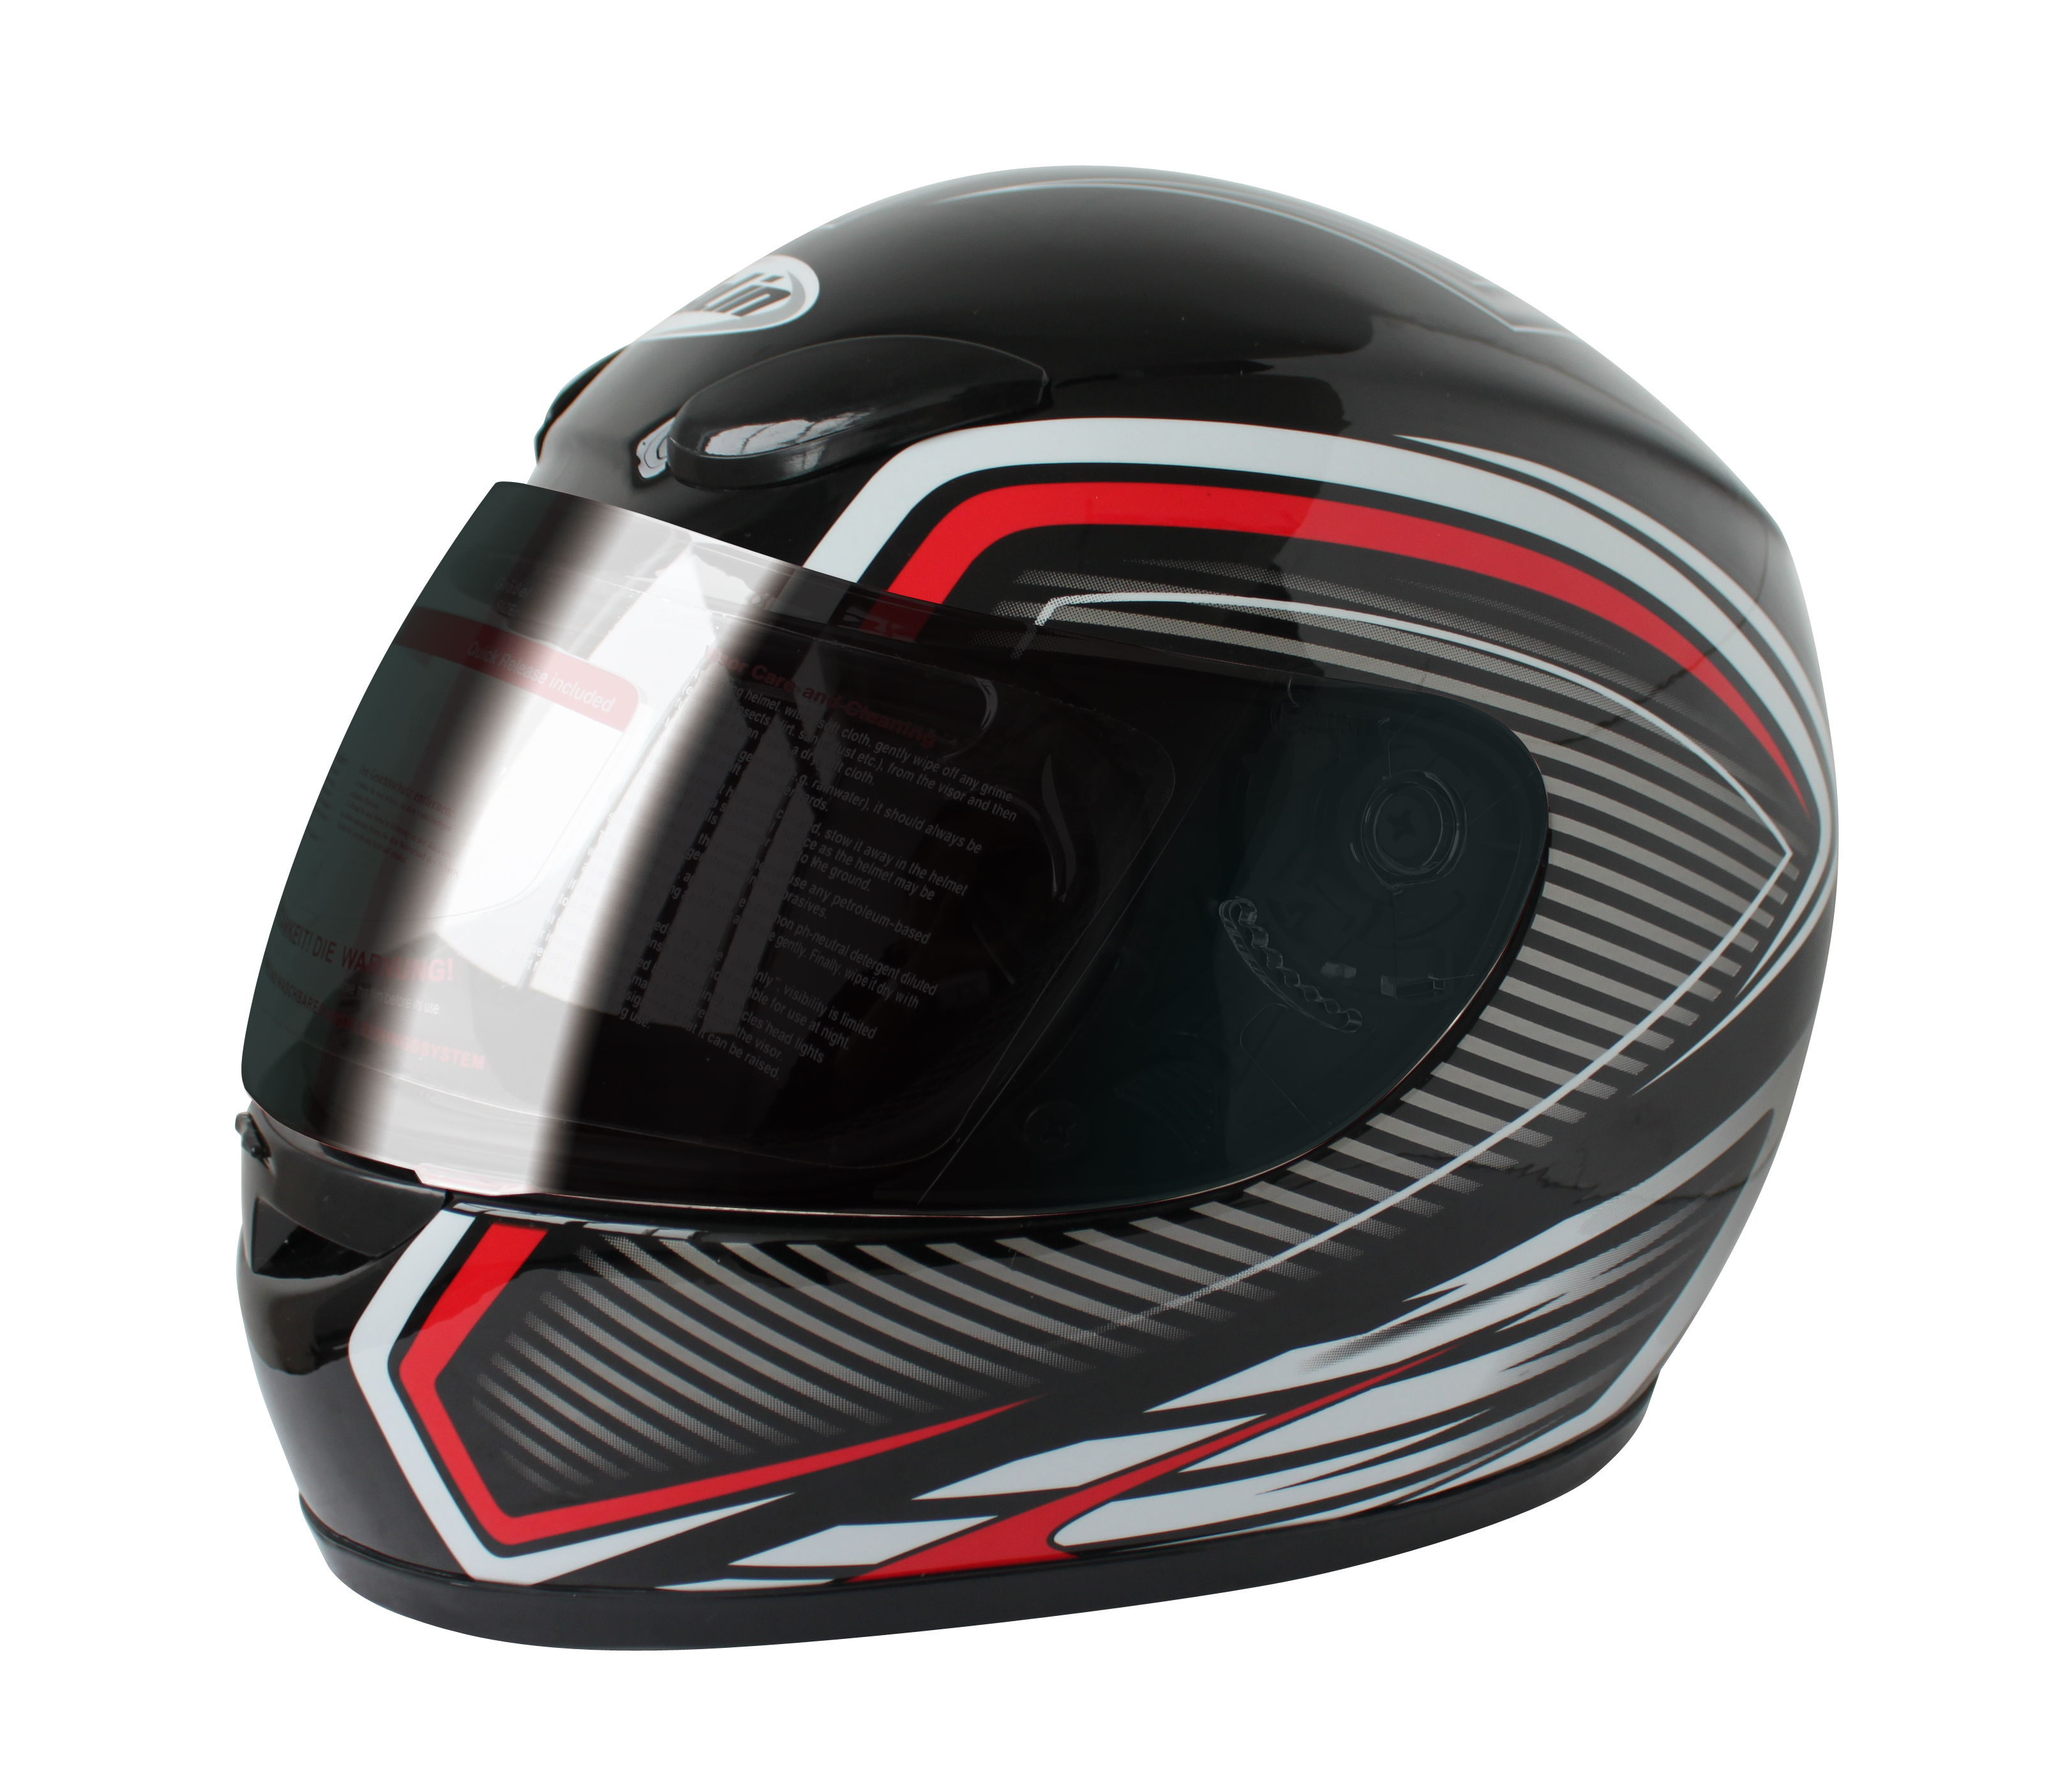 Motorcycle Fullface helmet